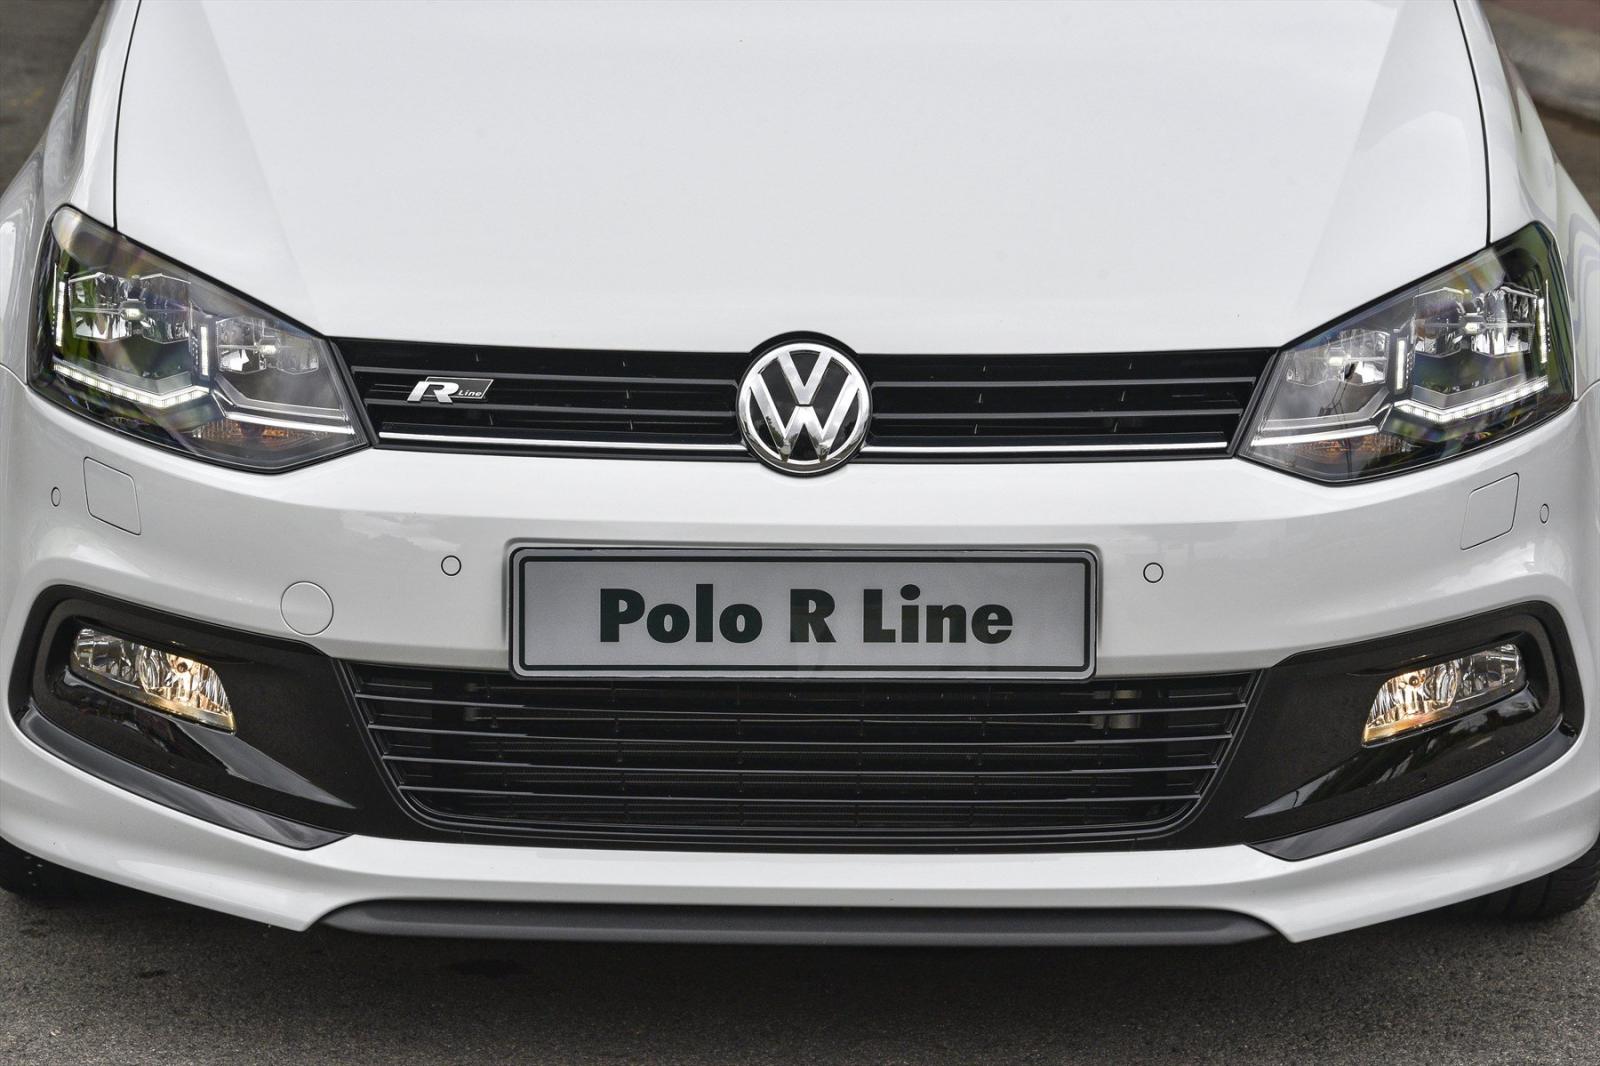 Volkswagen Polo R-line front Bonnet view